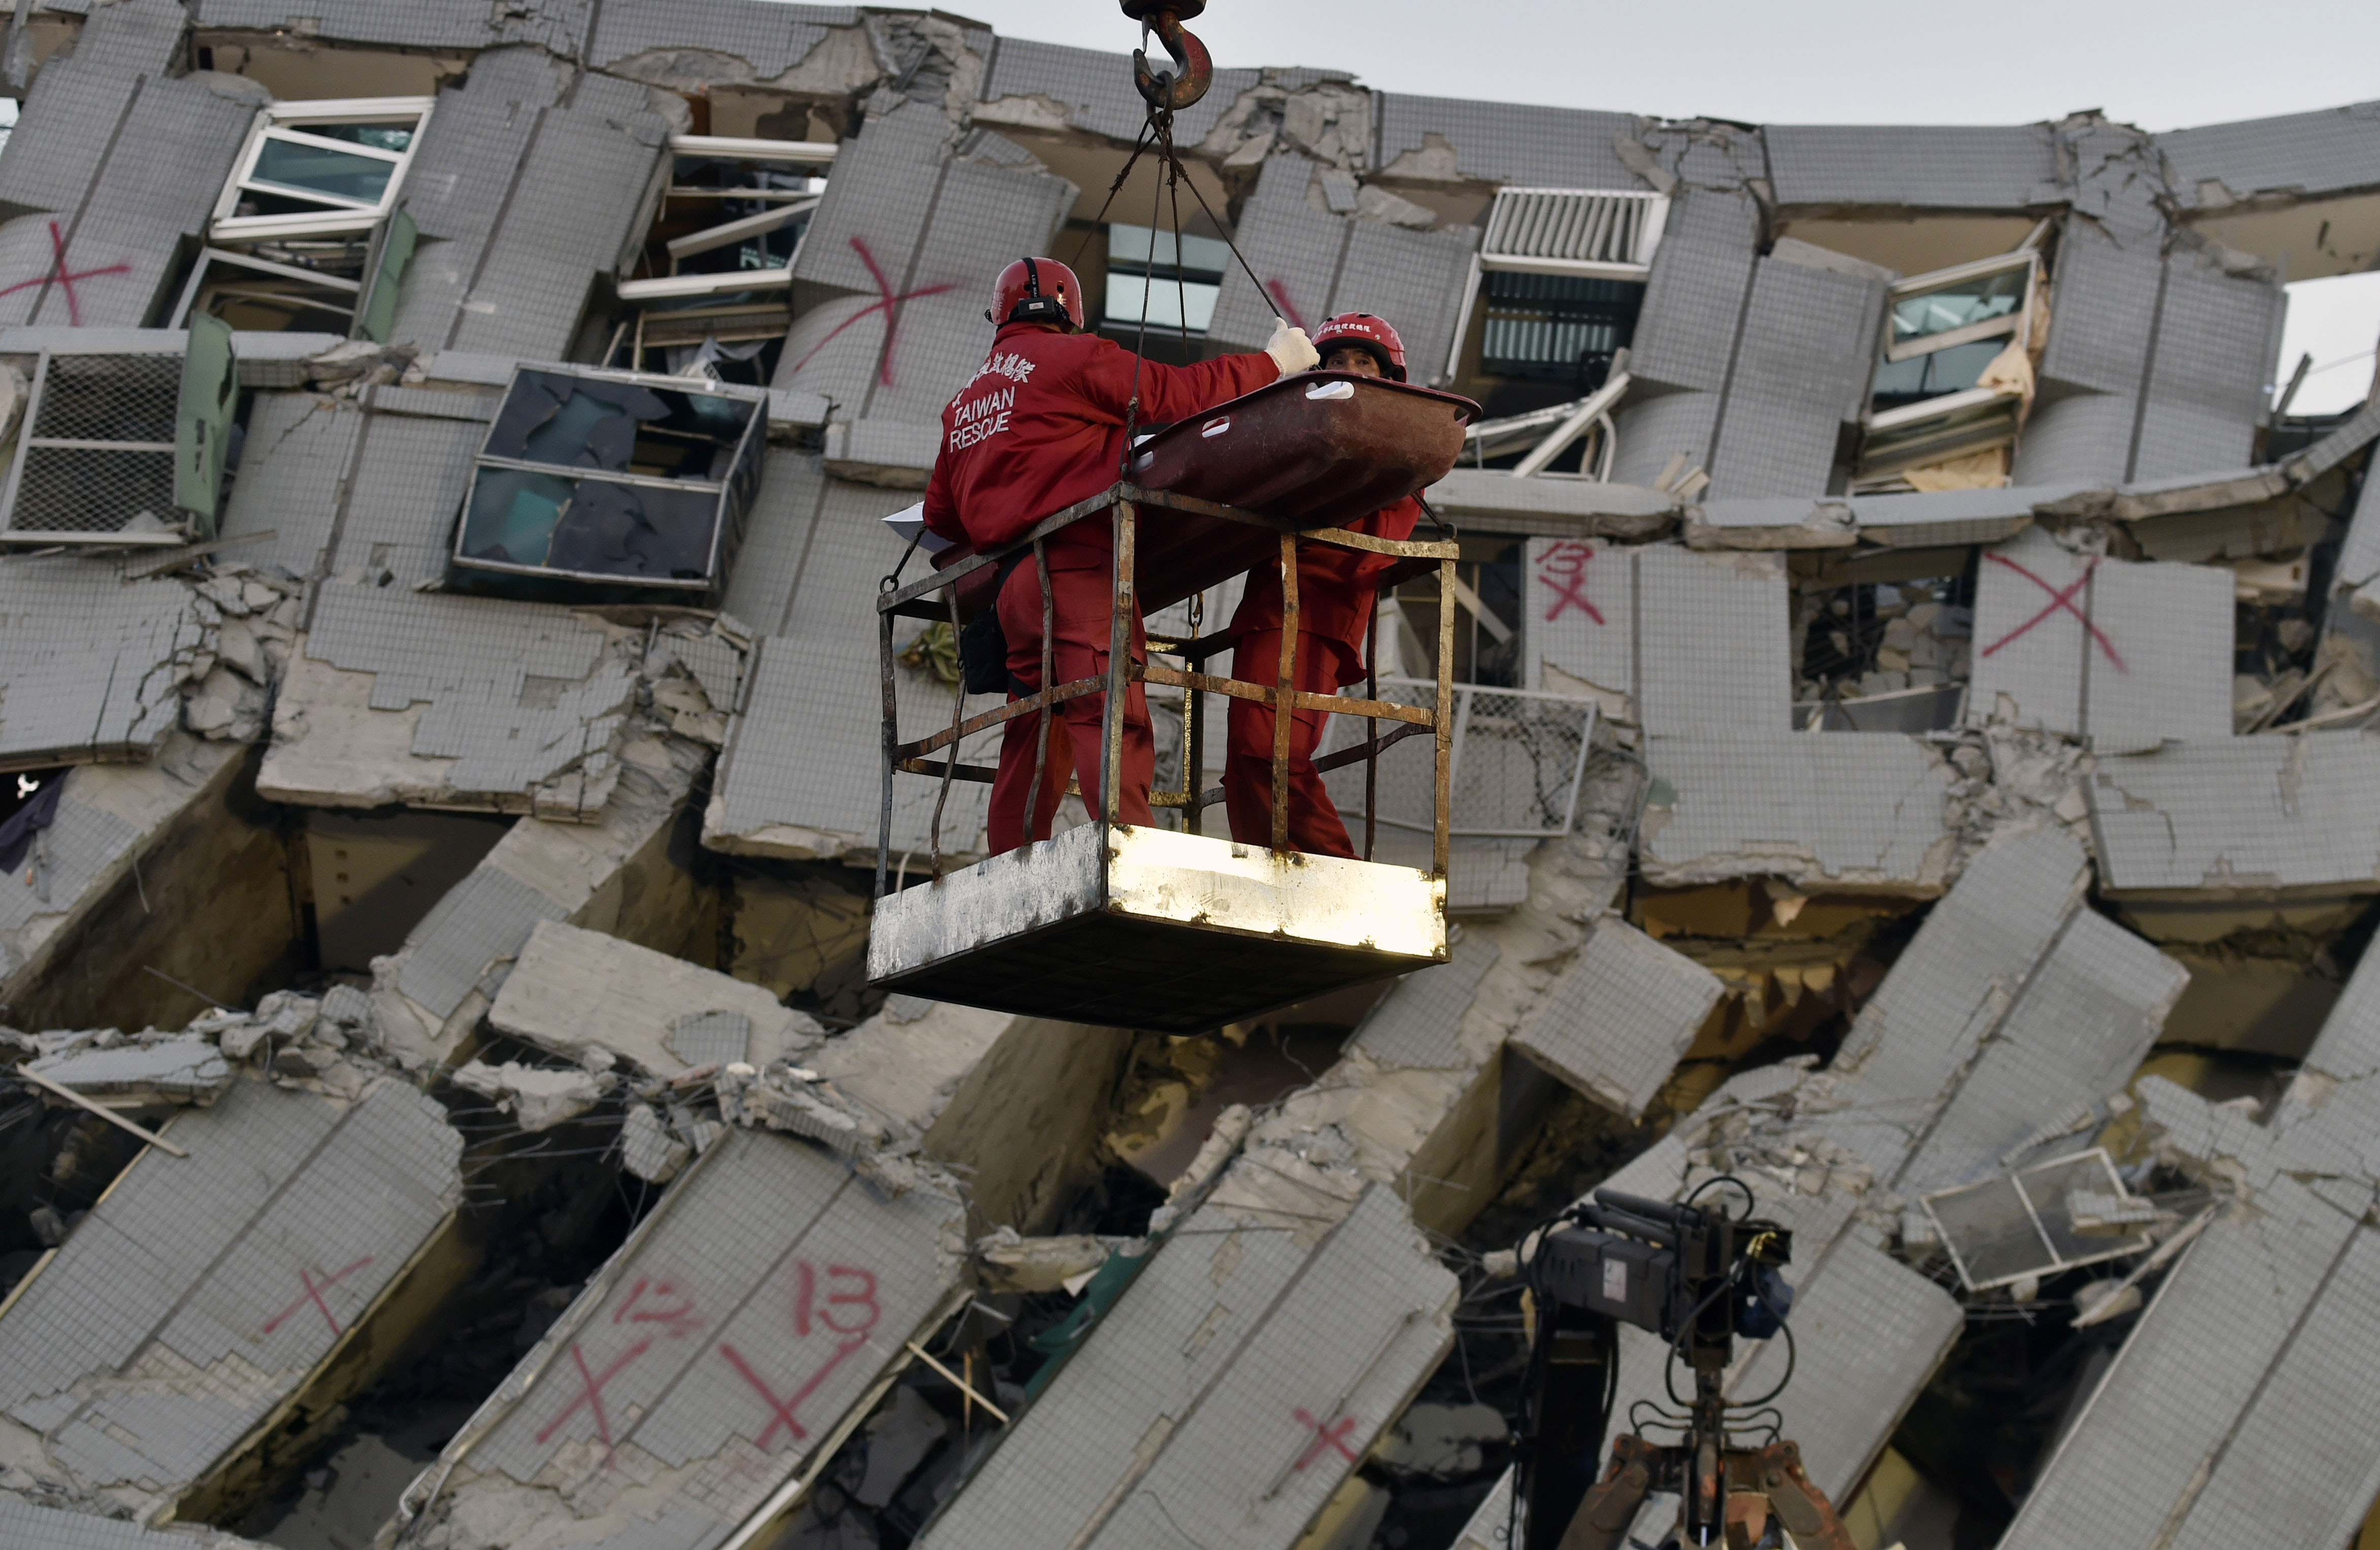 Túlélők után kutatnak a földrengésben összeomlott lakóházak romjai között Tajvanon